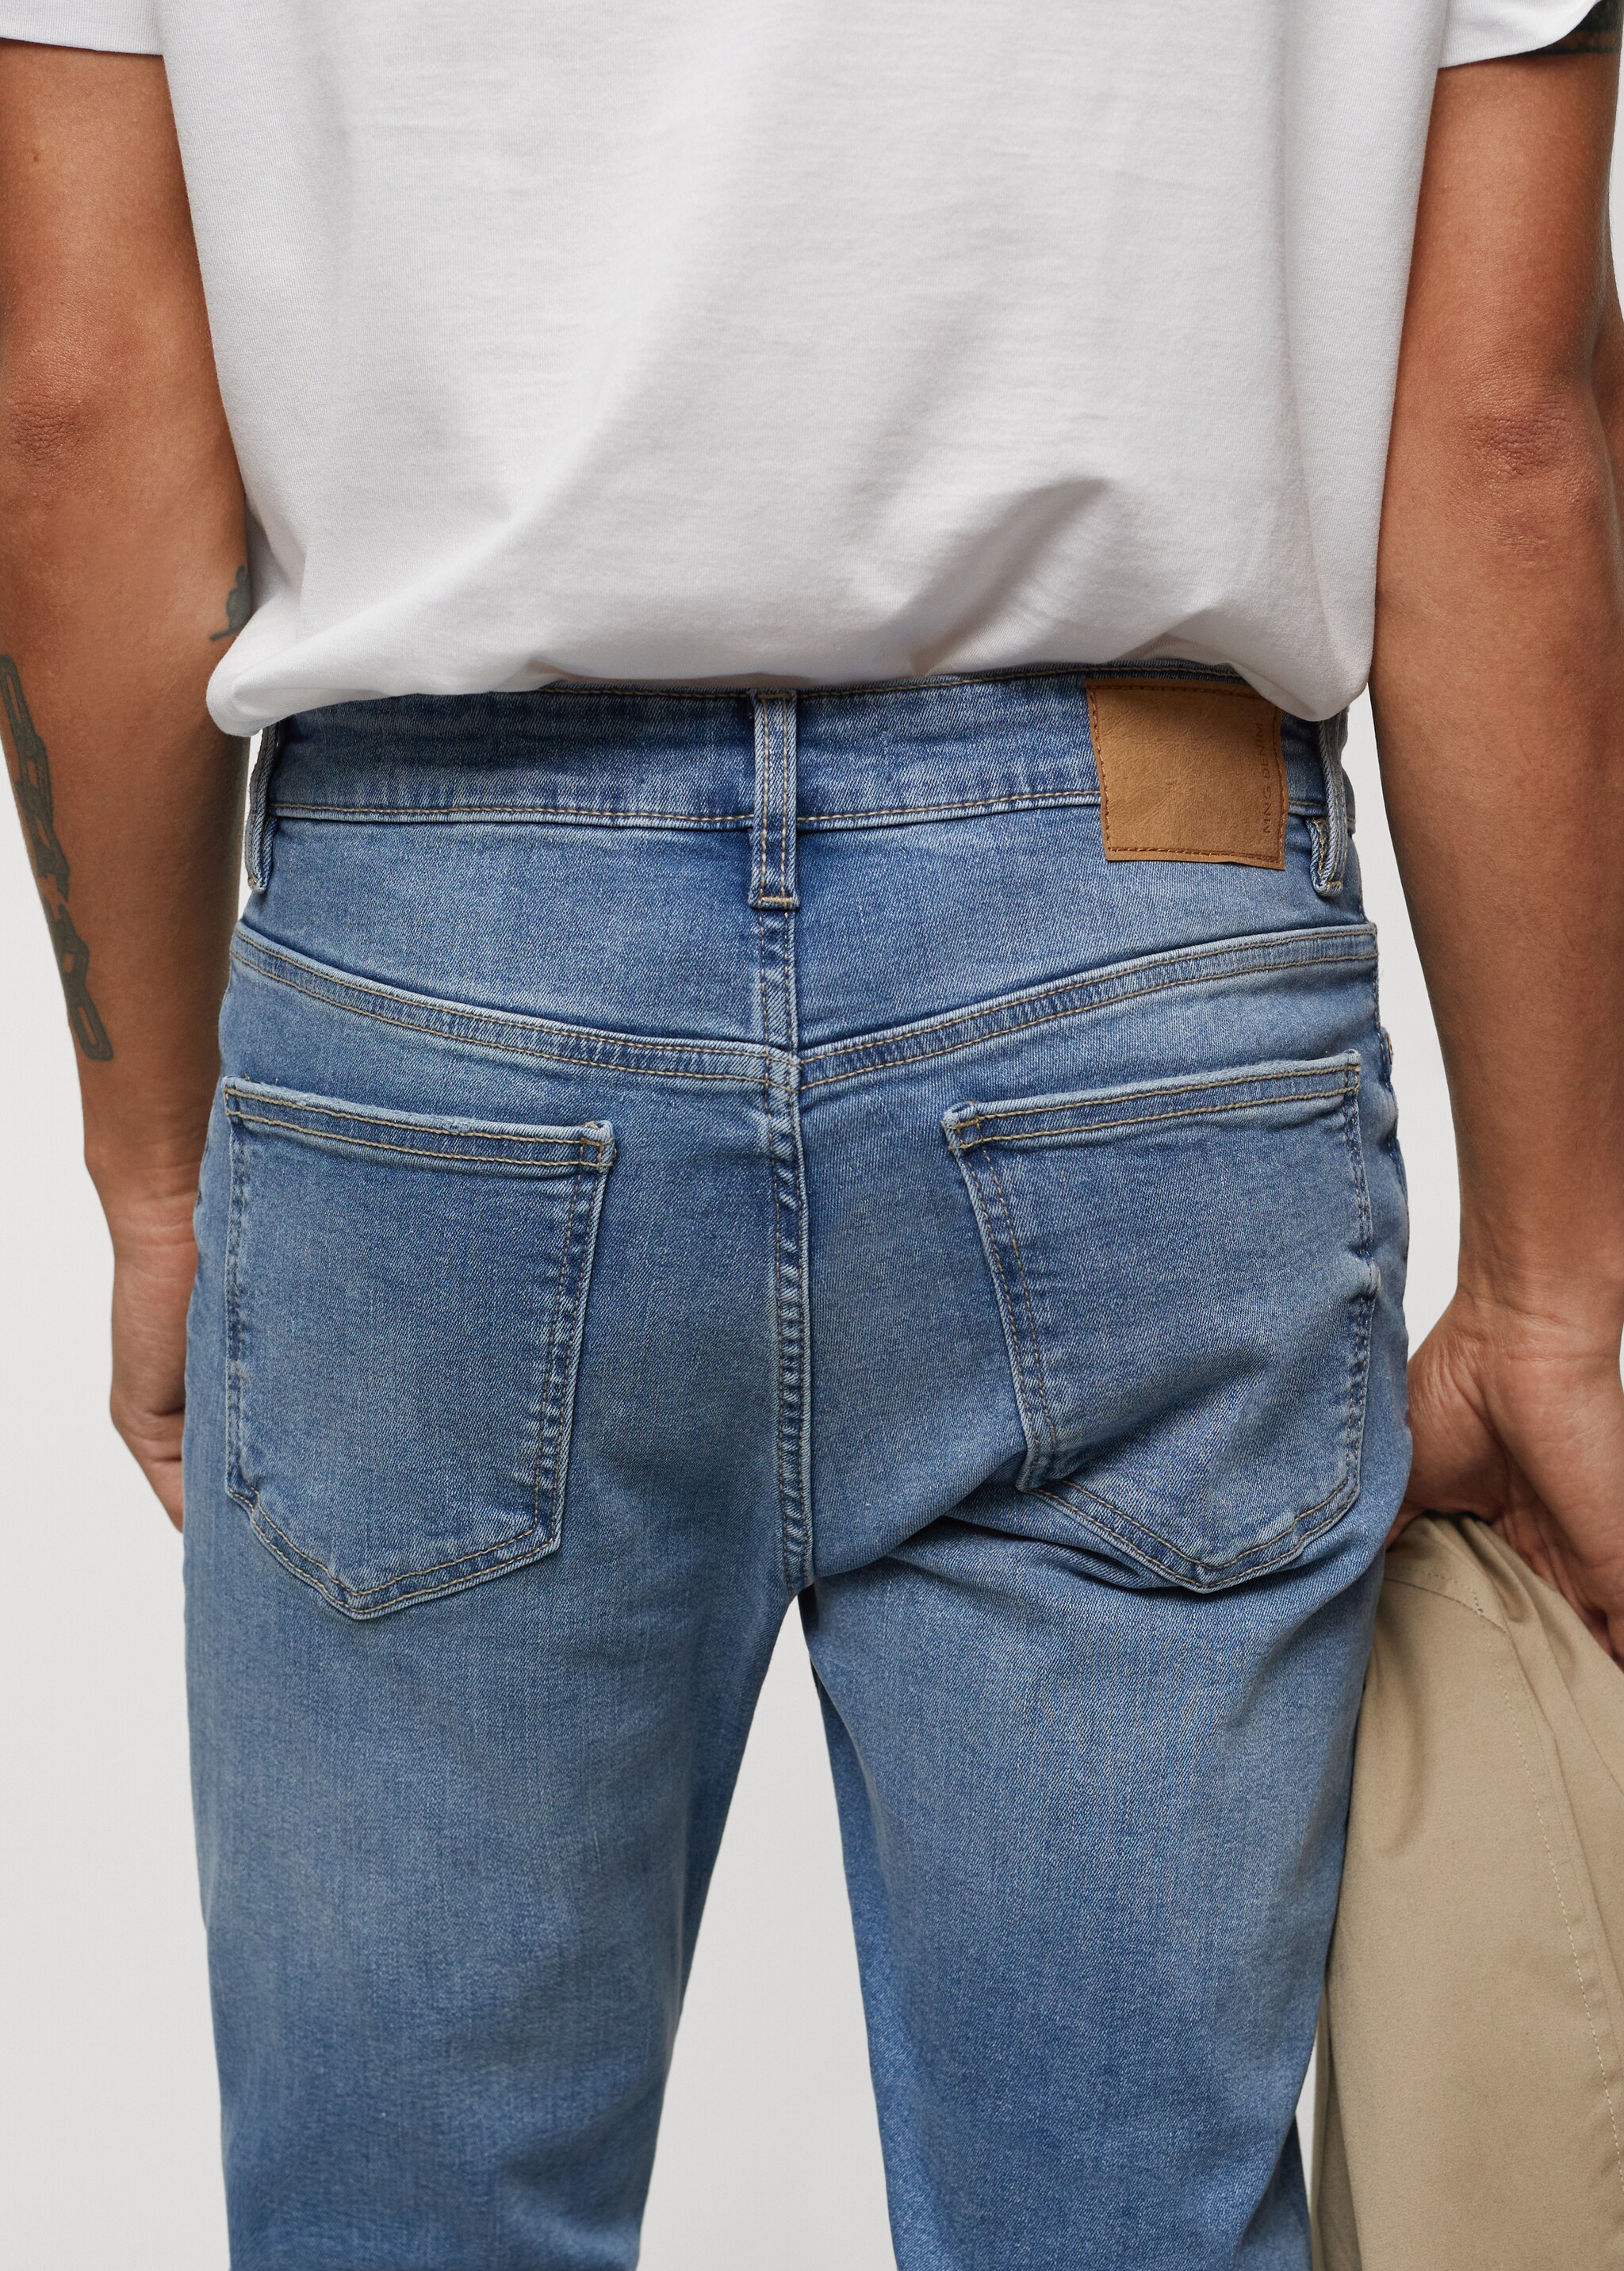 Jeans Jude skinny fit - Detalle del artículo 6